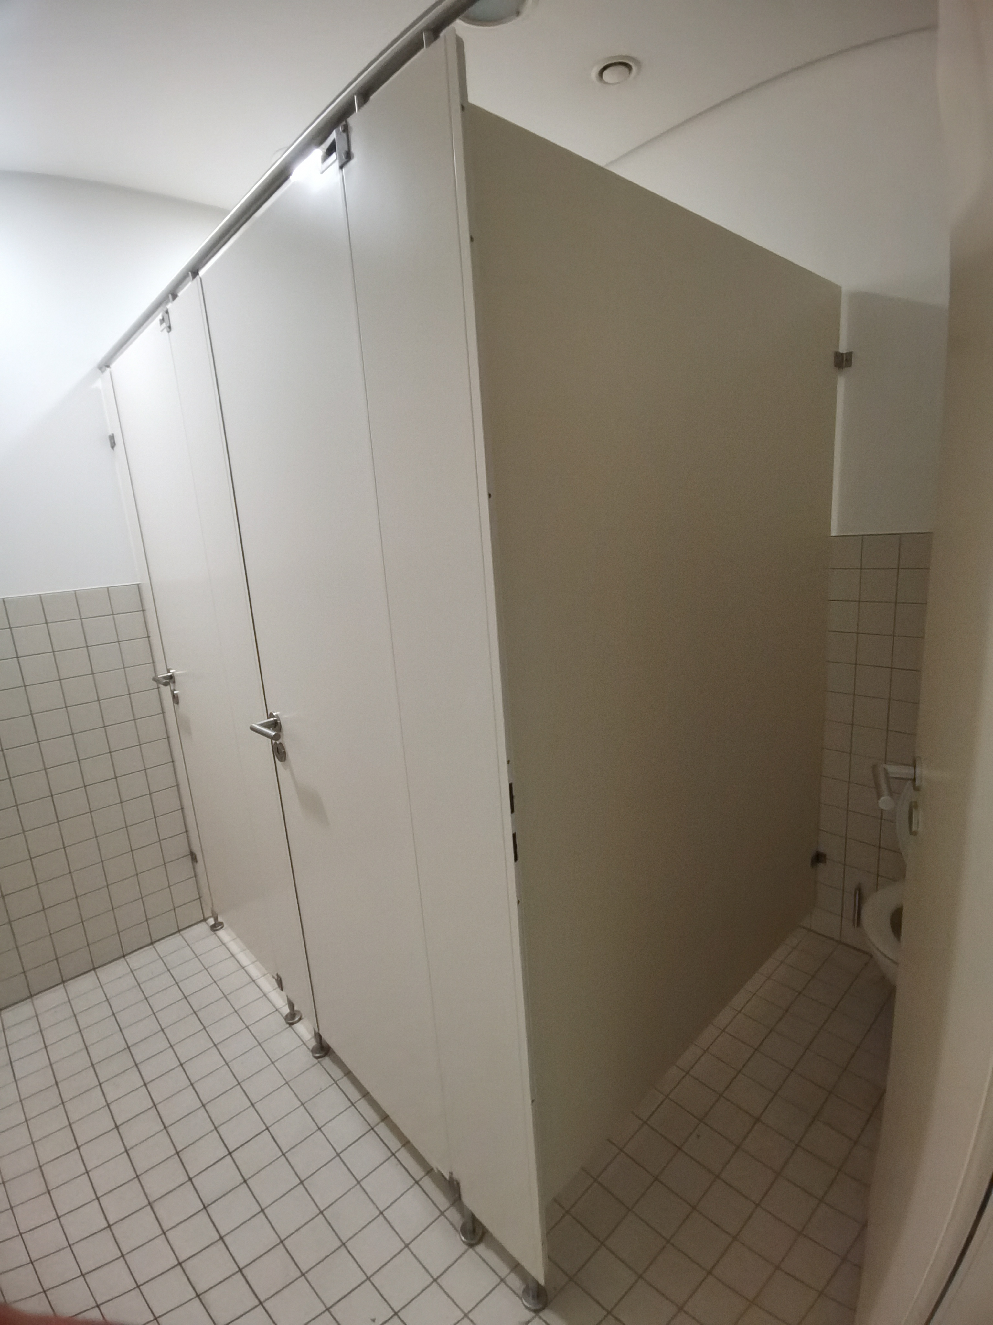 WC Trennwand inkl. Türen 1490x2000mm - Concular - Gebrauchte Baumaterialien kaufen